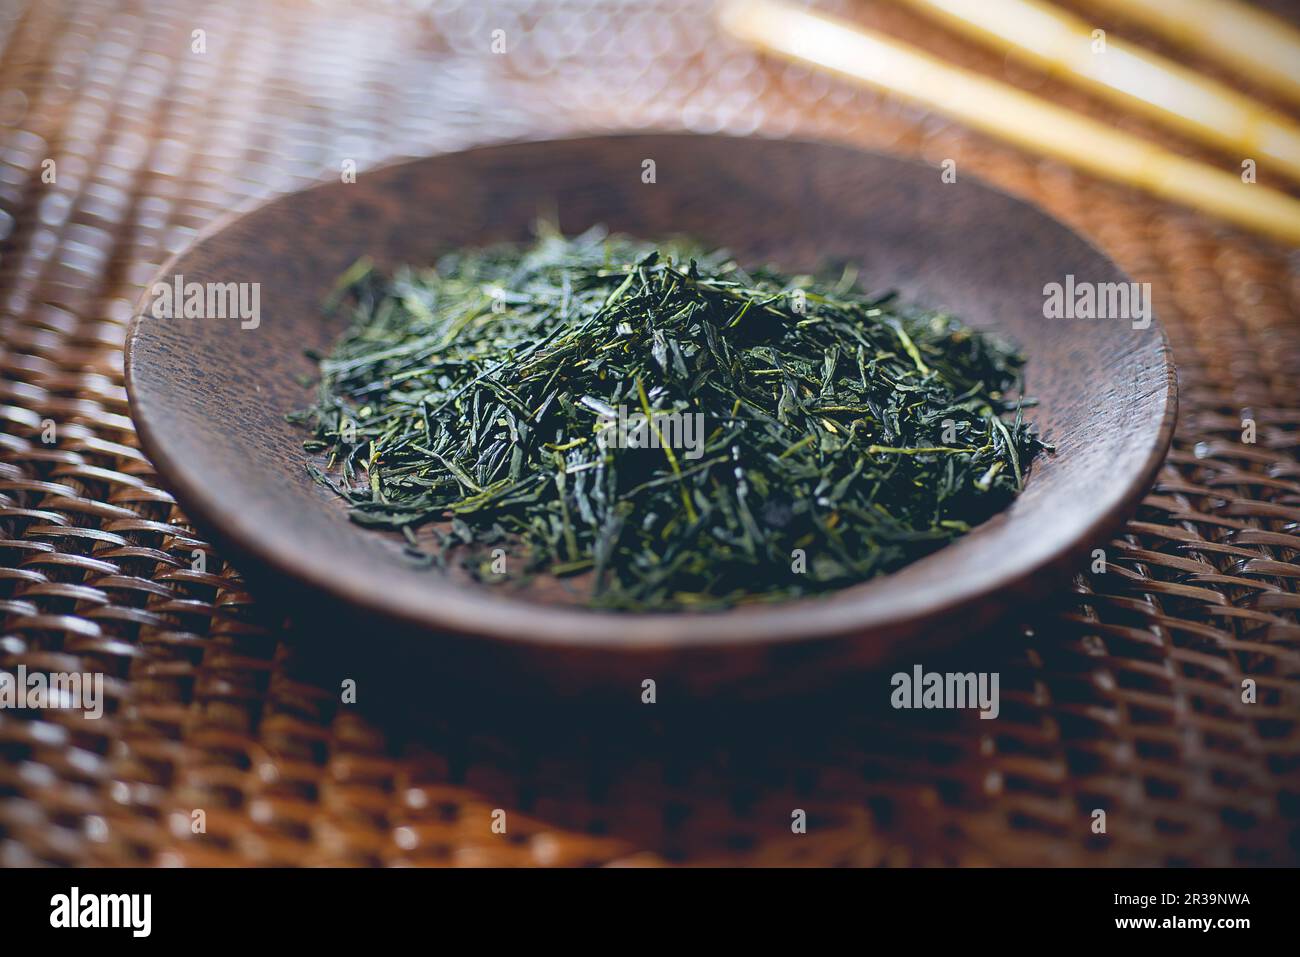 https://c8.alamy.com/comp/2R39NWA/green-tea-tea-leaves-in-a-wooden-bowl-2R39NWA.jpg